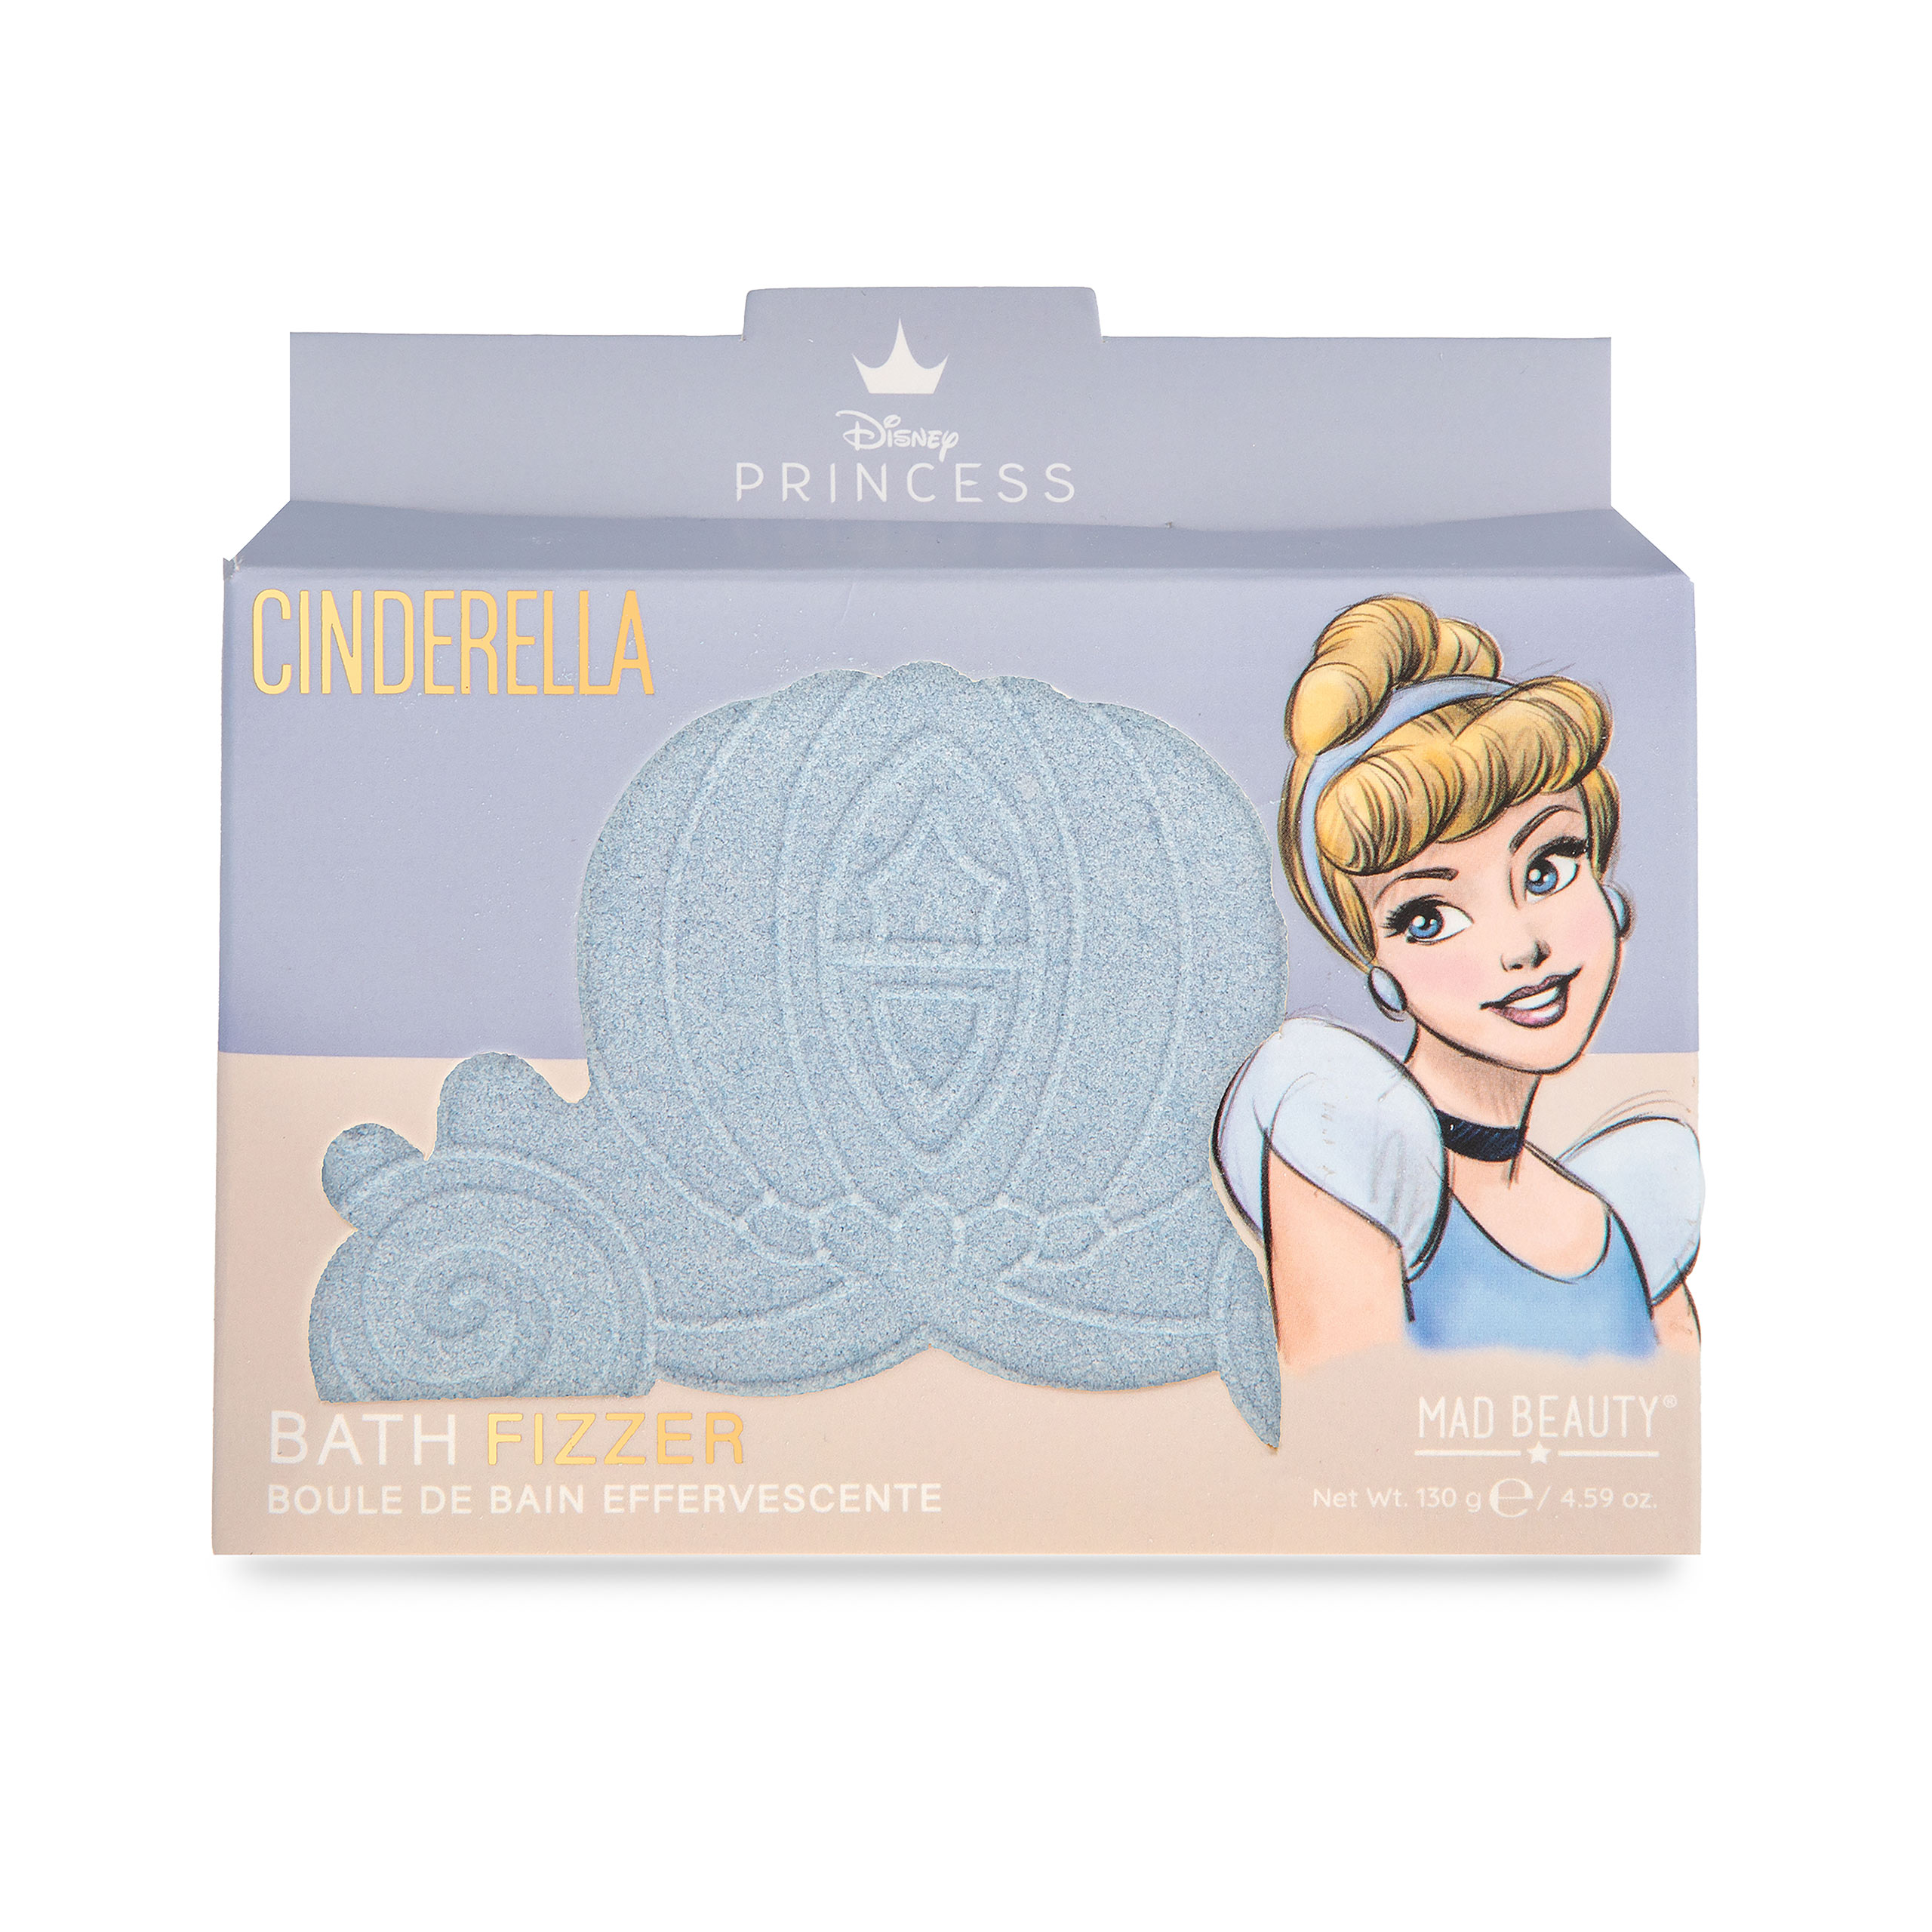 Cinderella - Kutsche Badefizzer